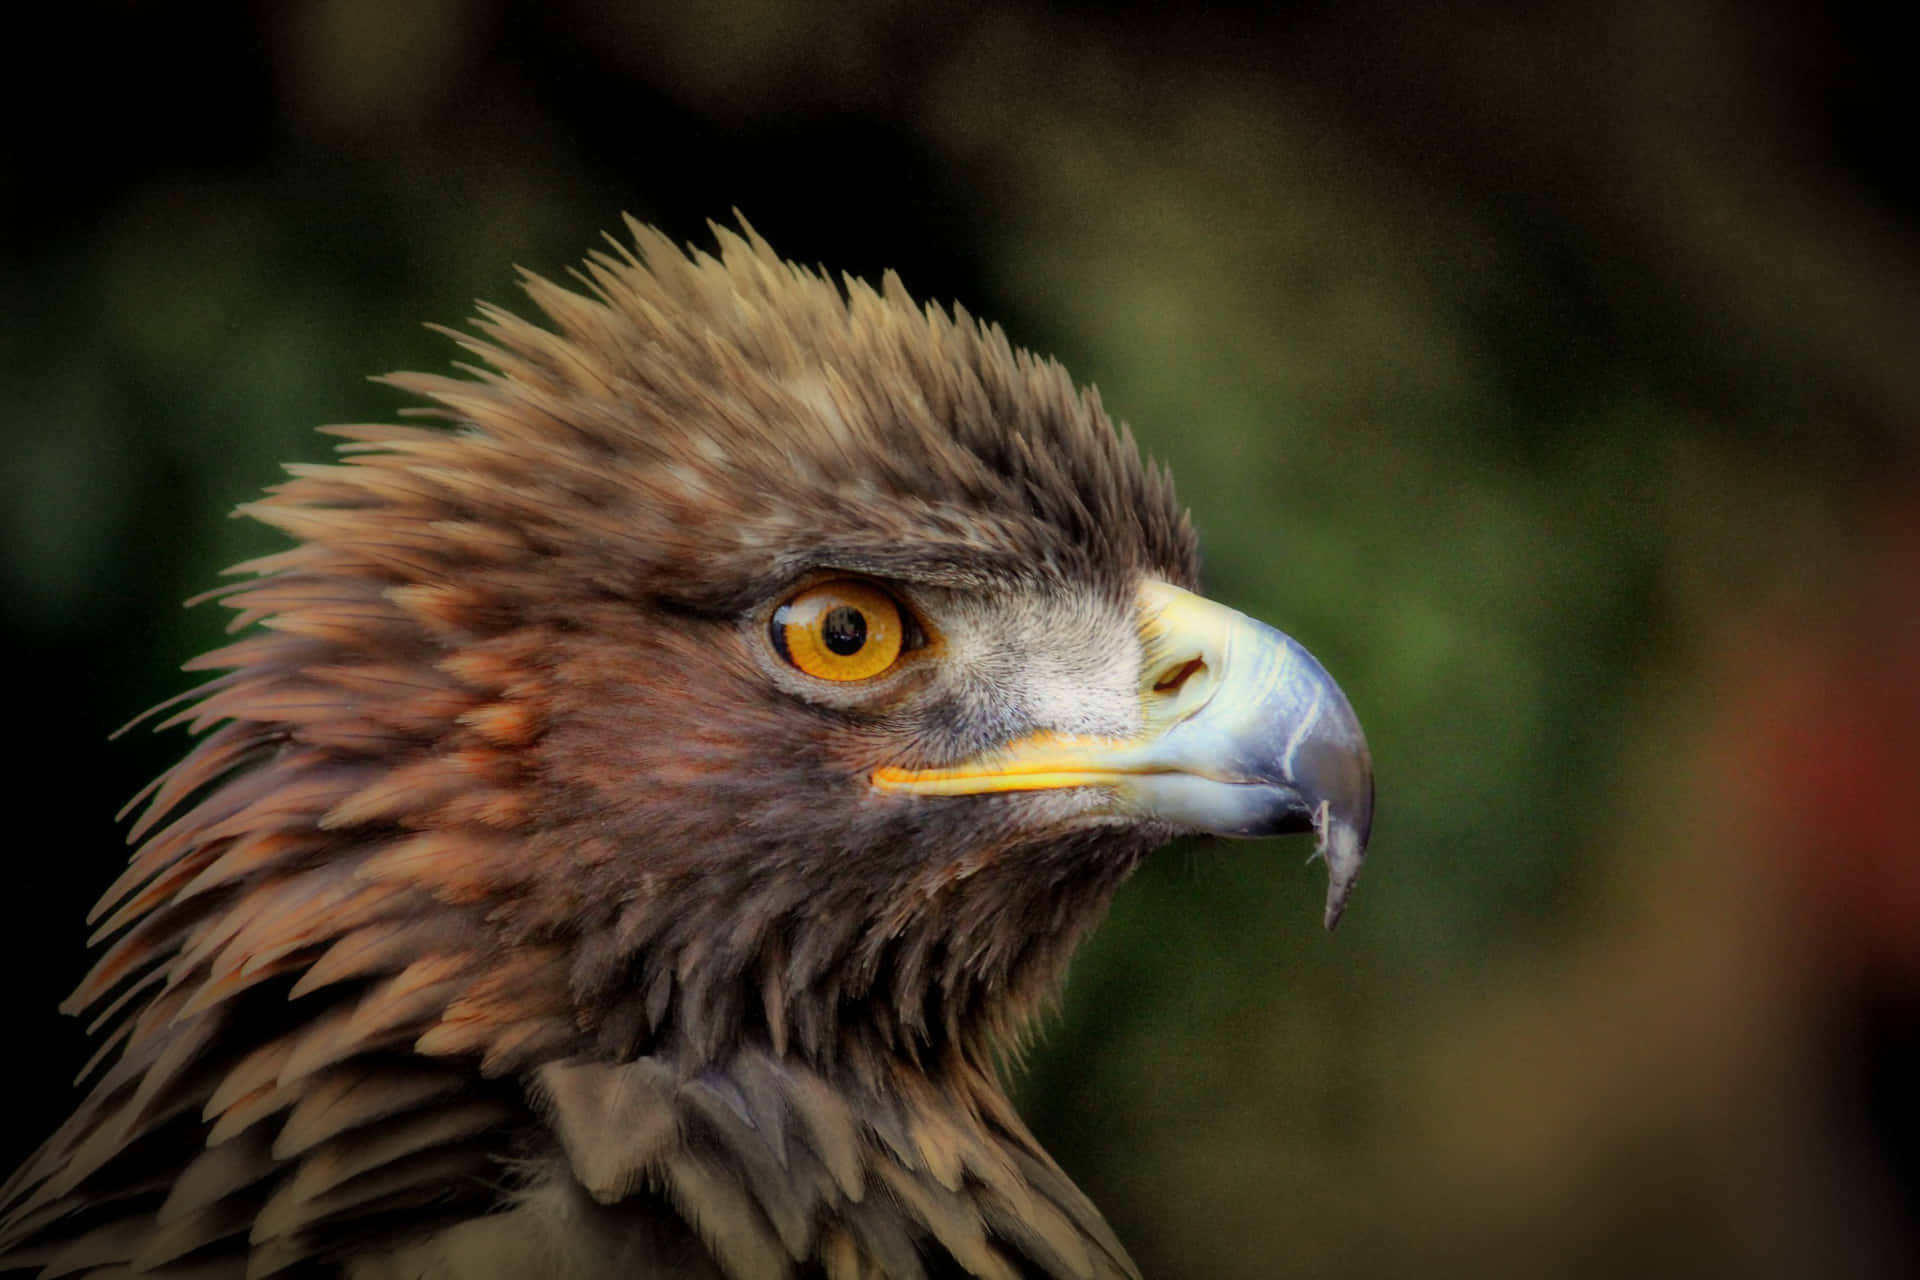 A majestic golden eagle soars above a mountainous landscape